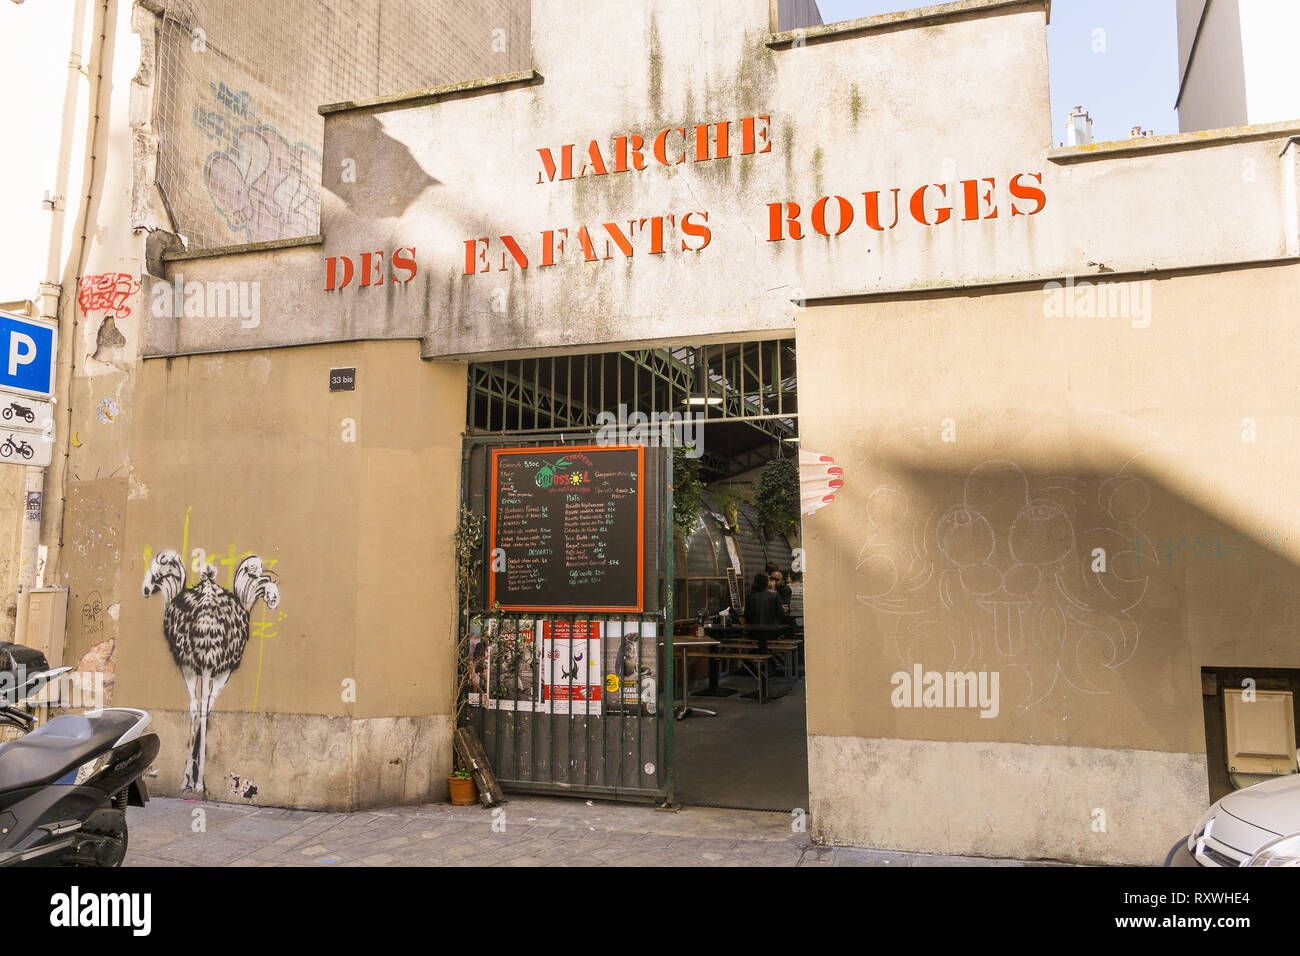 Paris food market - Entrance to the Marche des Enfants Rouges, food market in the Marais district of Paris, France, Europe. Stock Photo